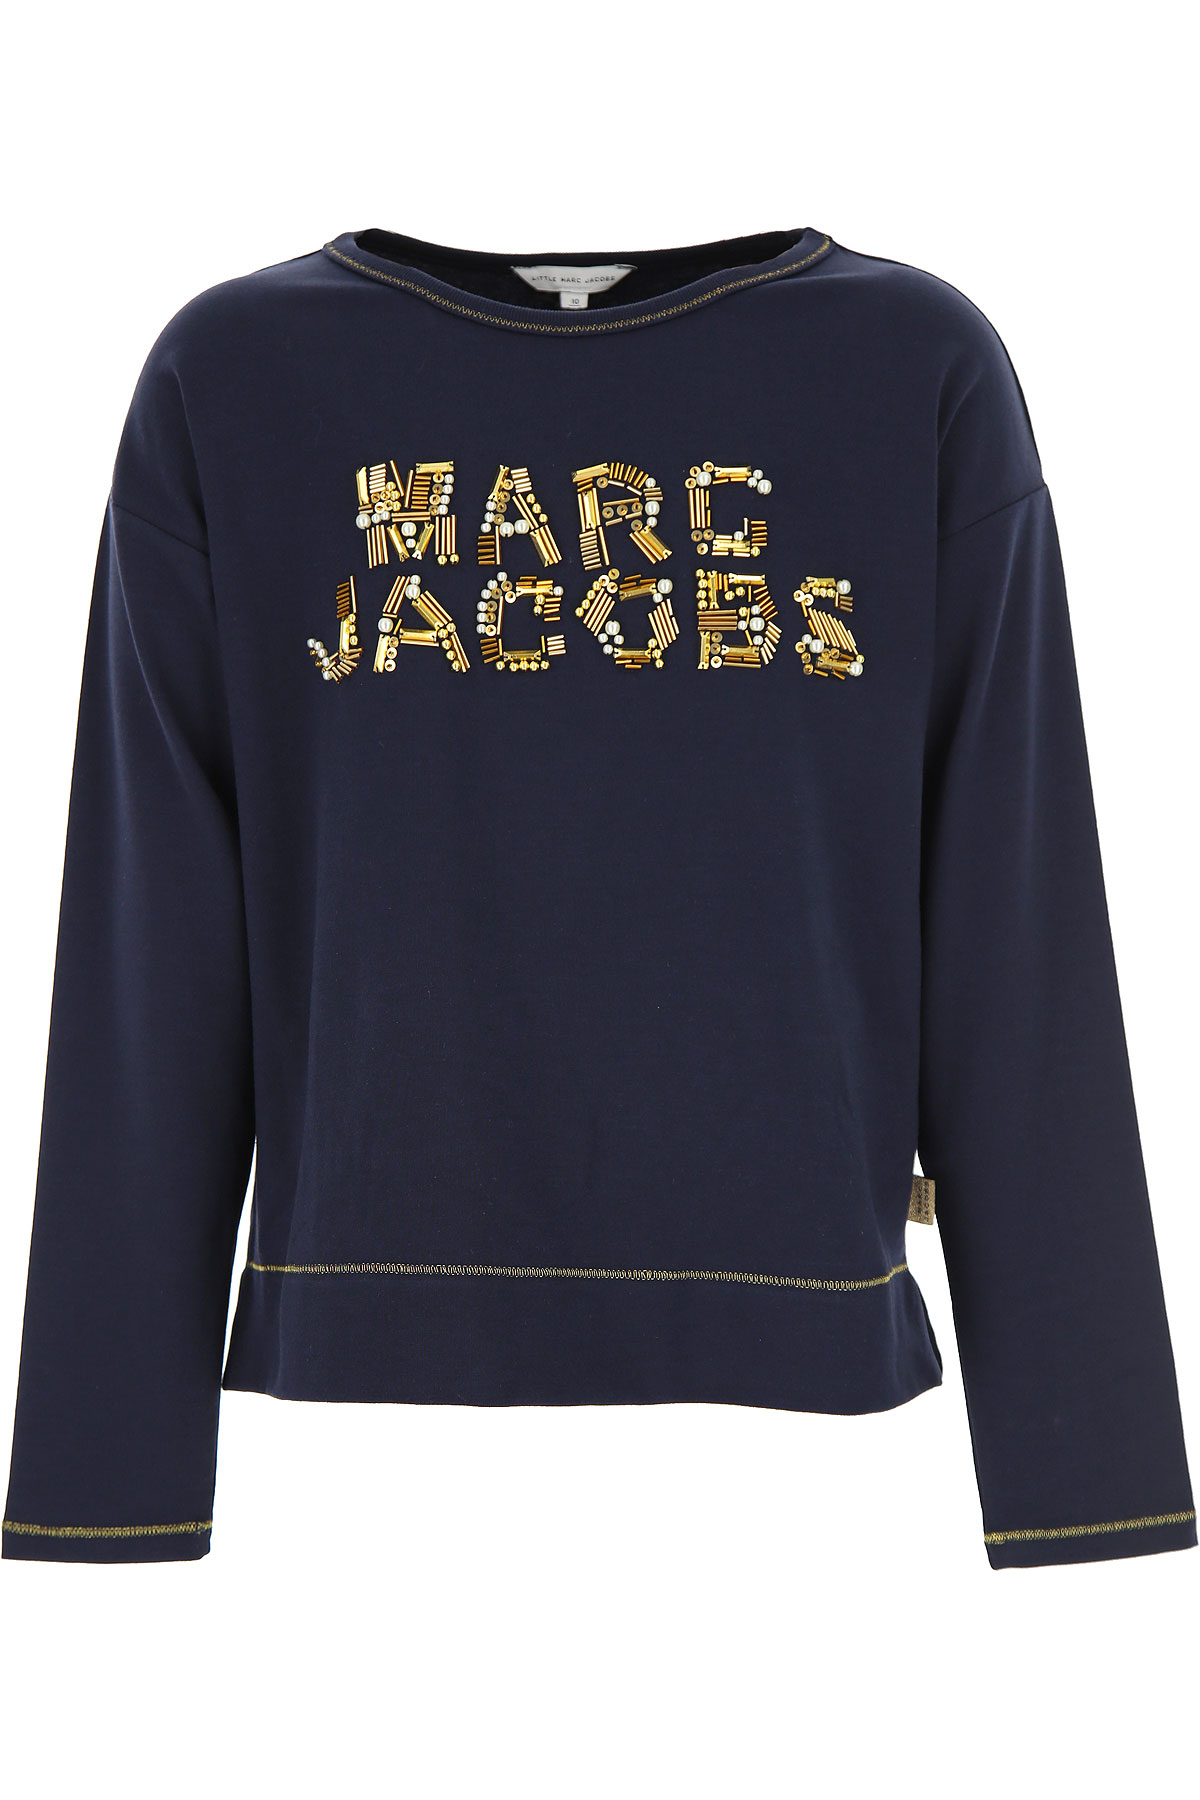 Marc Jacobs Kinder T-Shirt für Mädchen Günstig im Sale, Blau, Polyester, 2017, 10Y 12Y 14Y 8Y